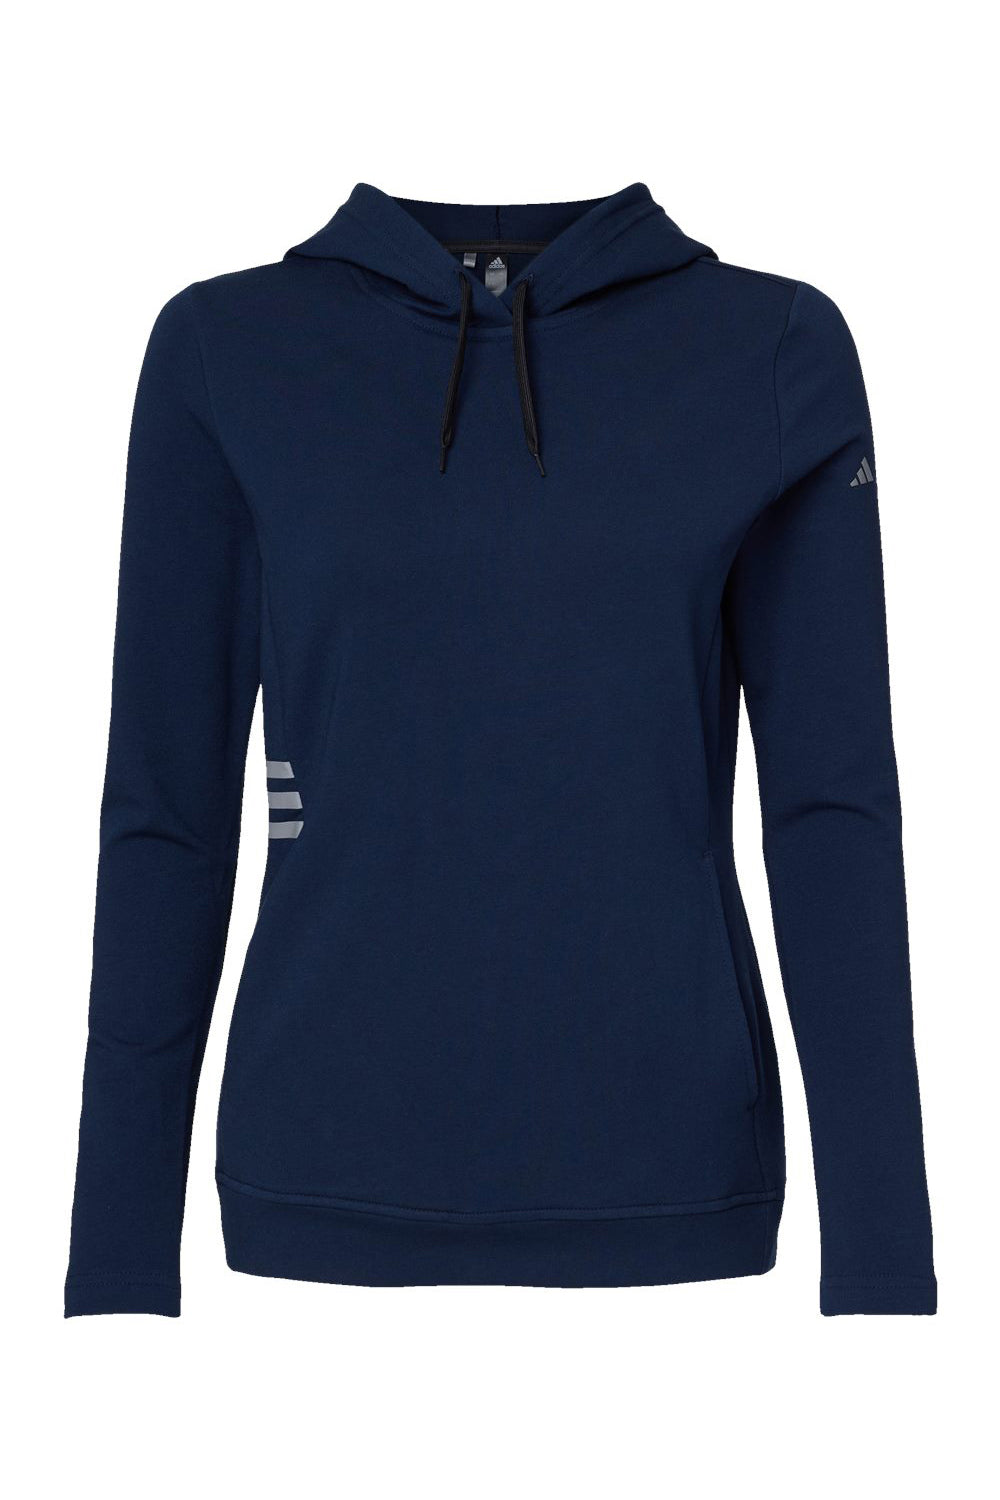 Adidas A451 Womens Hooded Sweatshirt Hoodie Collegiate Navy Blue Flat Front